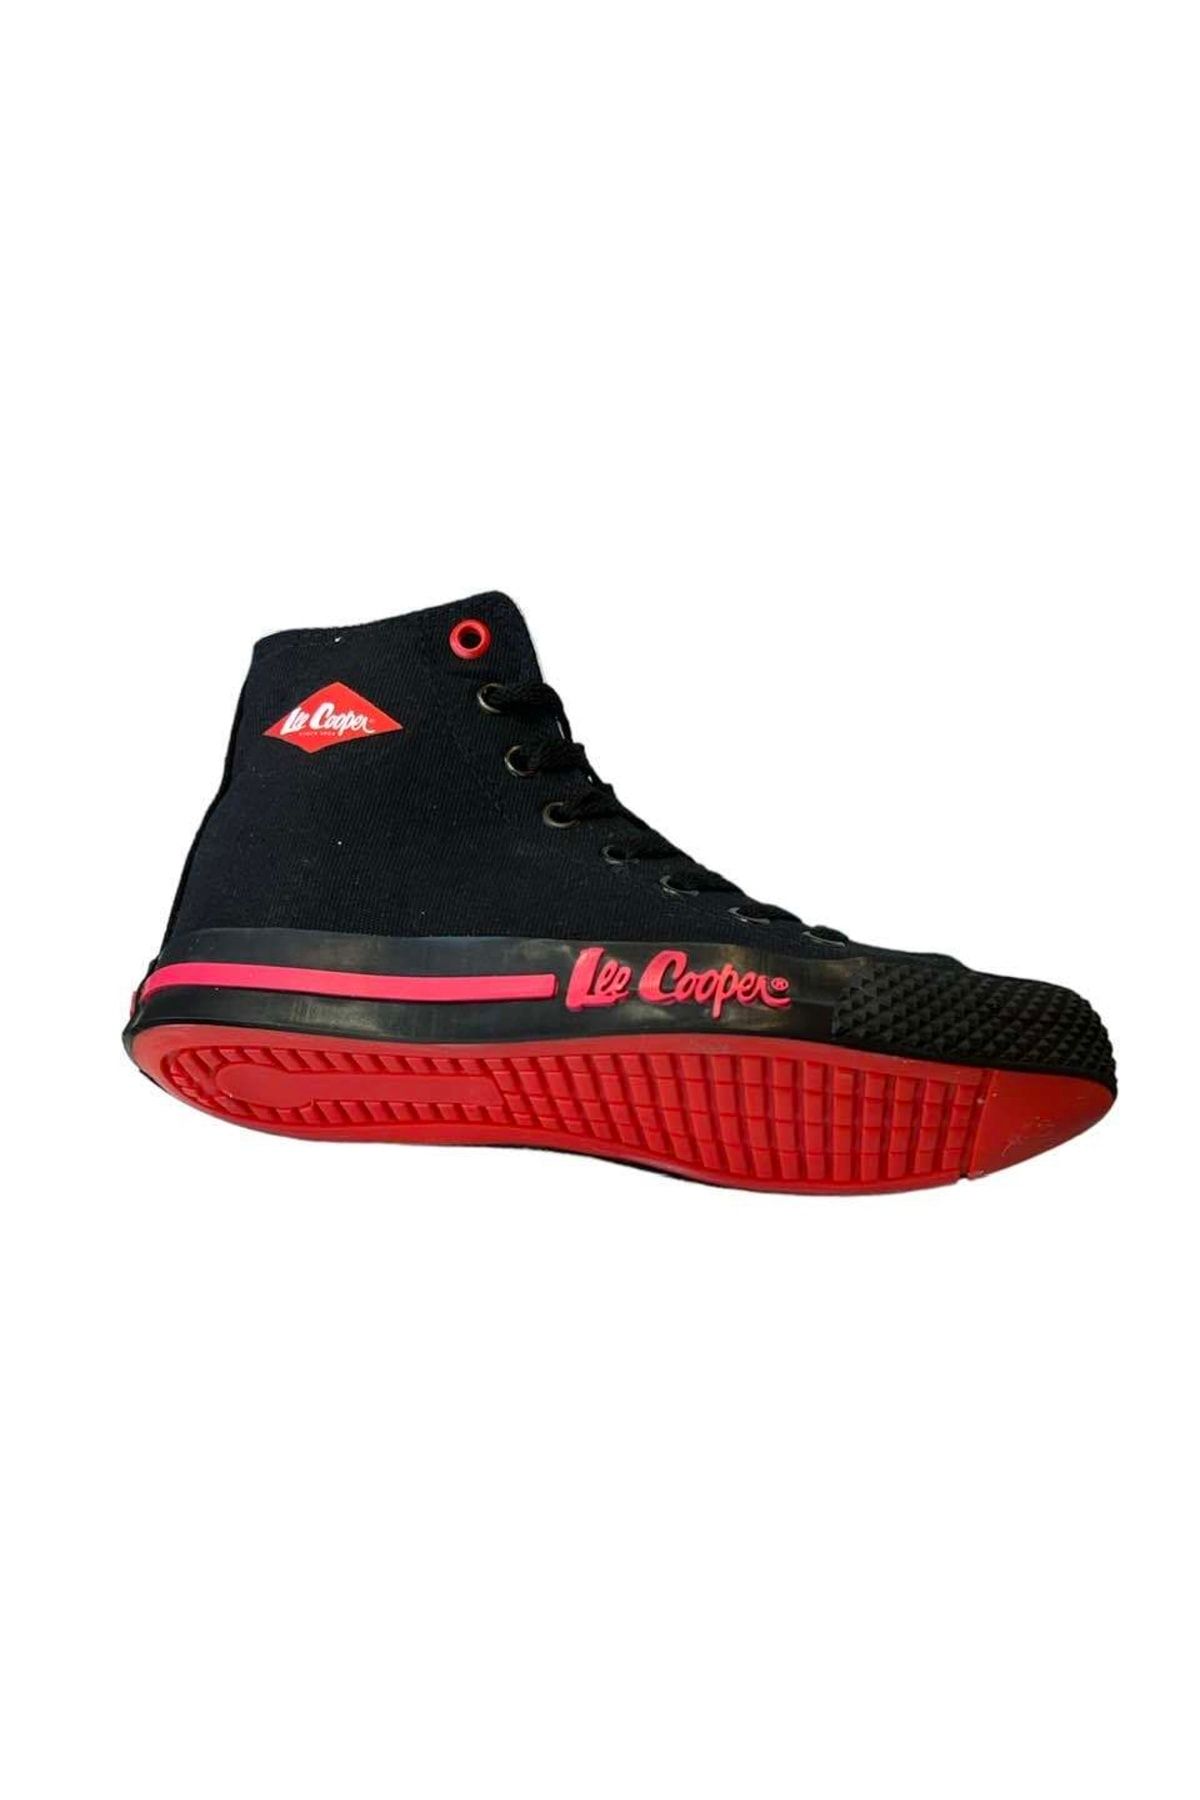 MyRunway | Shop Lee Cooper Black Casper Lace-Up Sneakers for Men from  MyRunway.co.za